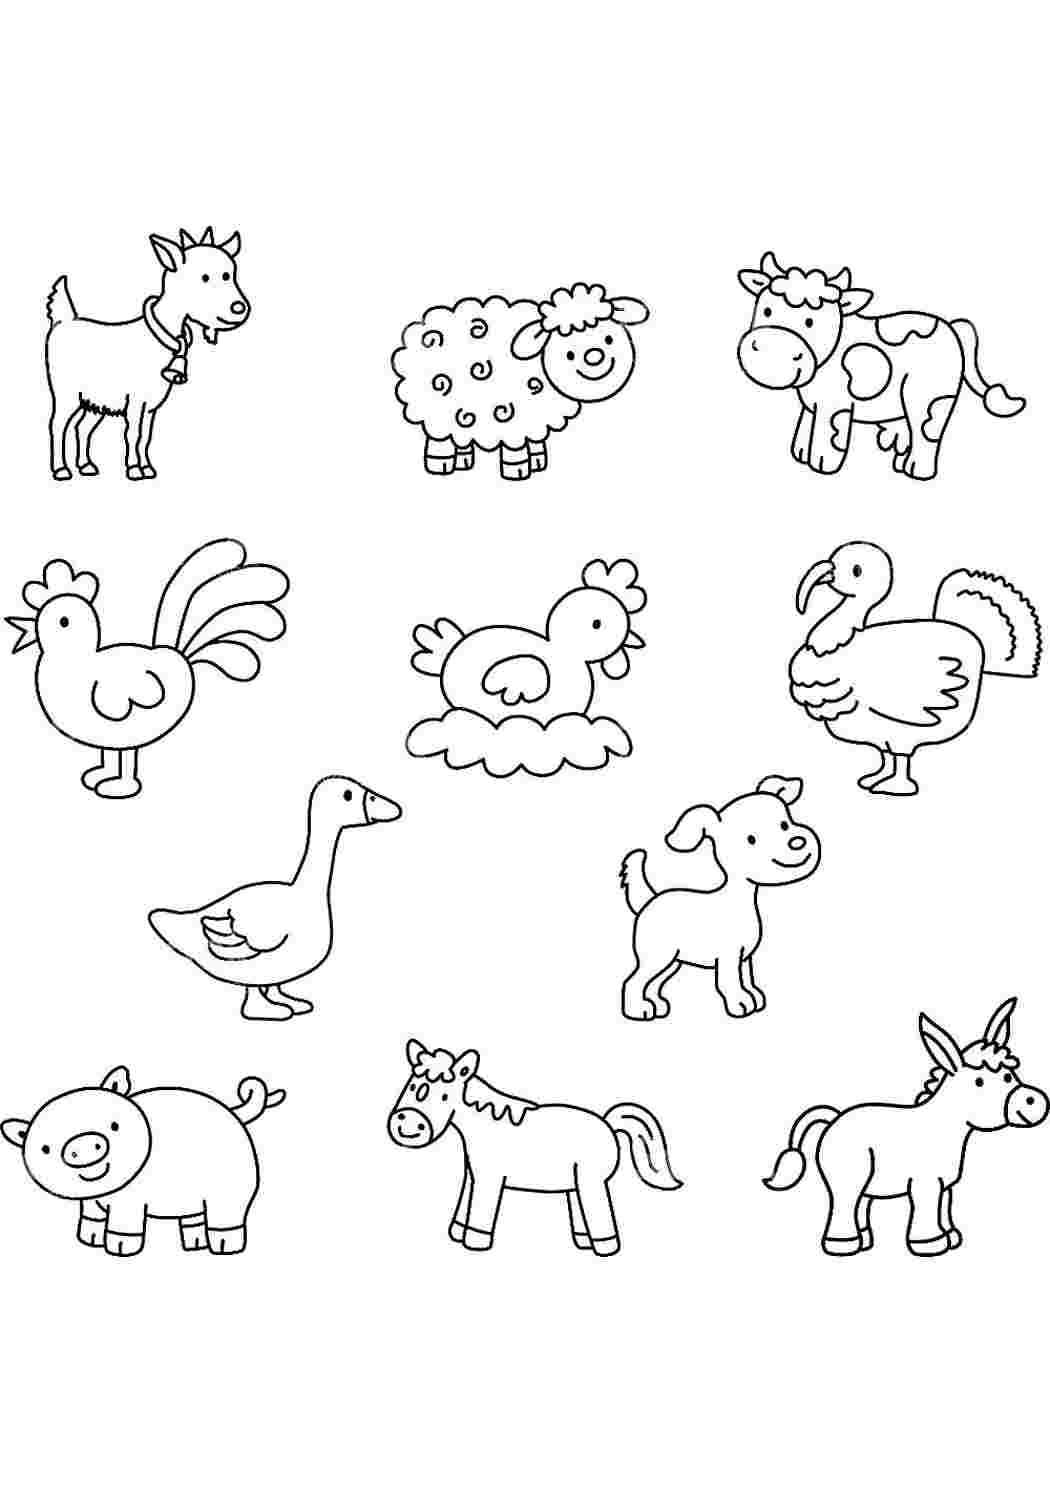 Раскраска для дошкольников животные. Рисунки животных для детей. Раскраски животных для детей. Контуры животных для детей. Раскраски для малышей домашние животные.